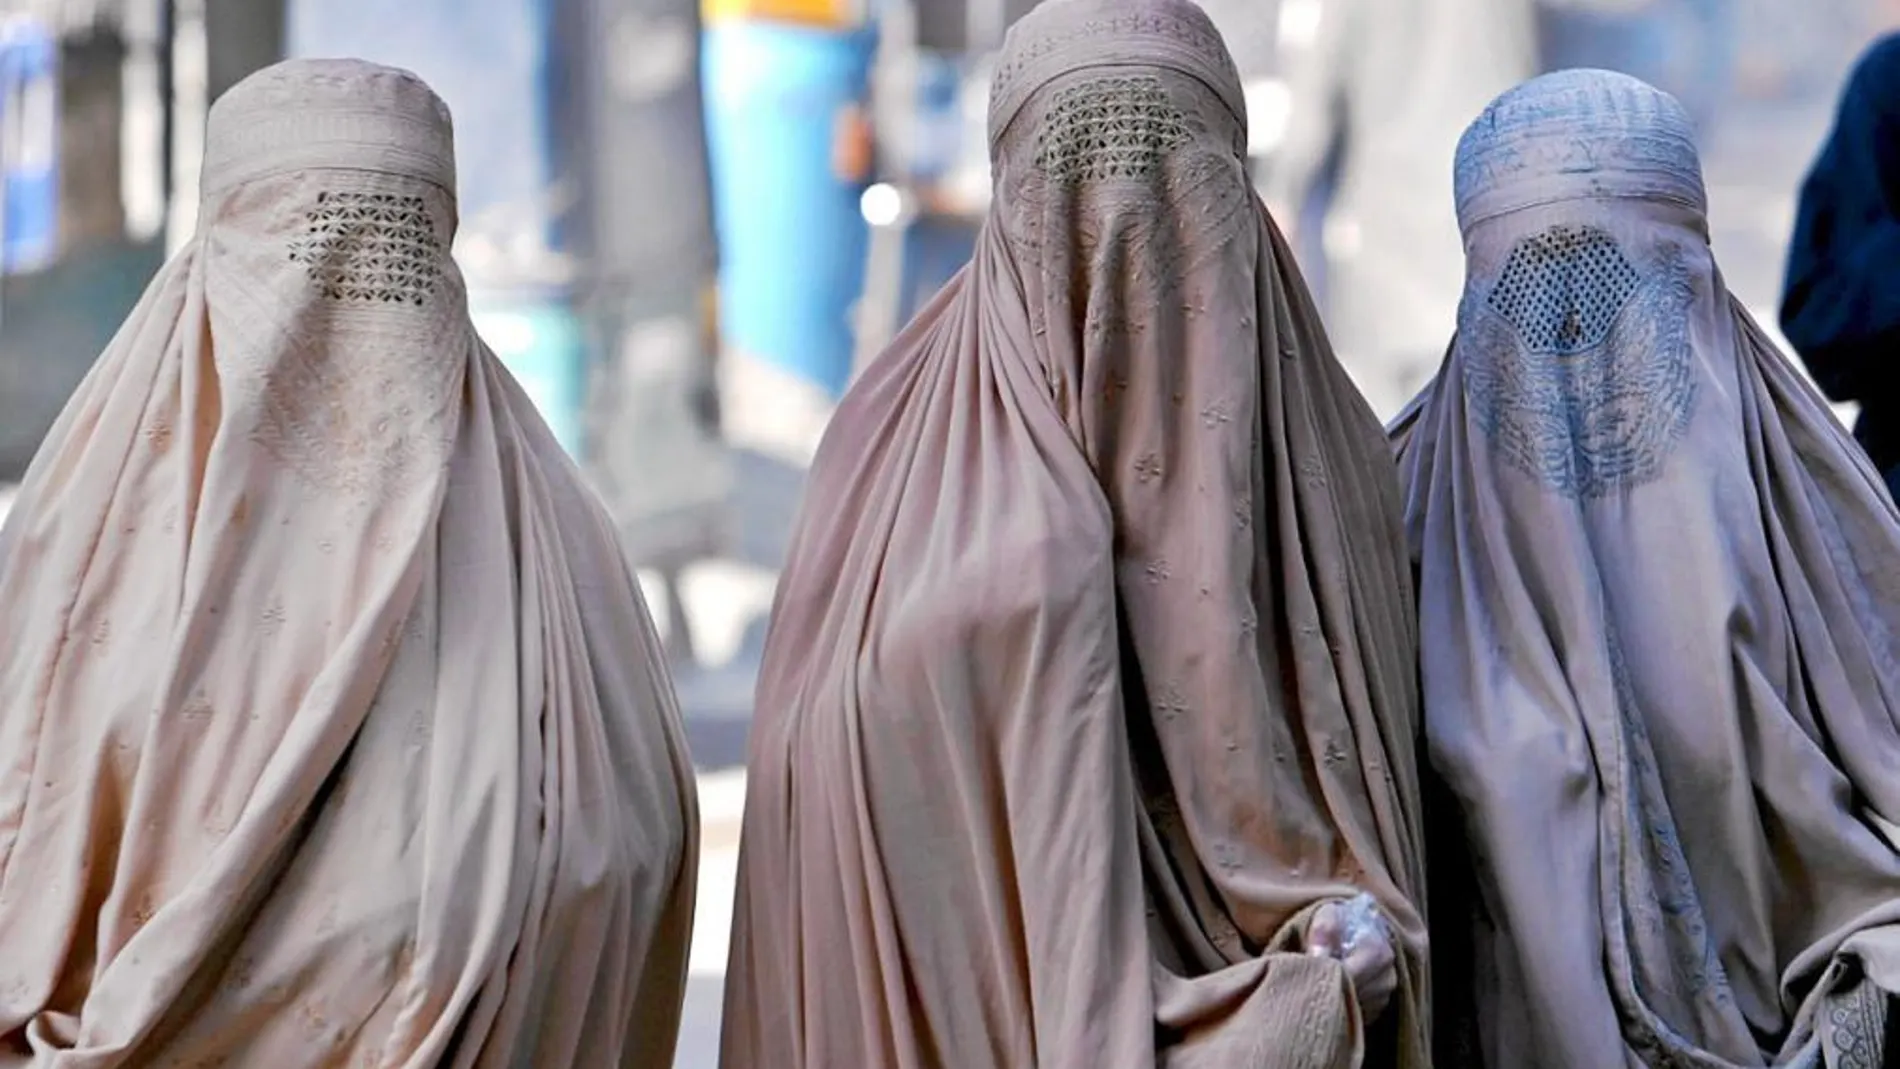 Lleida prohibió por ordenanza el uso del burka en 2010, pero el Supremo revocó la normativa